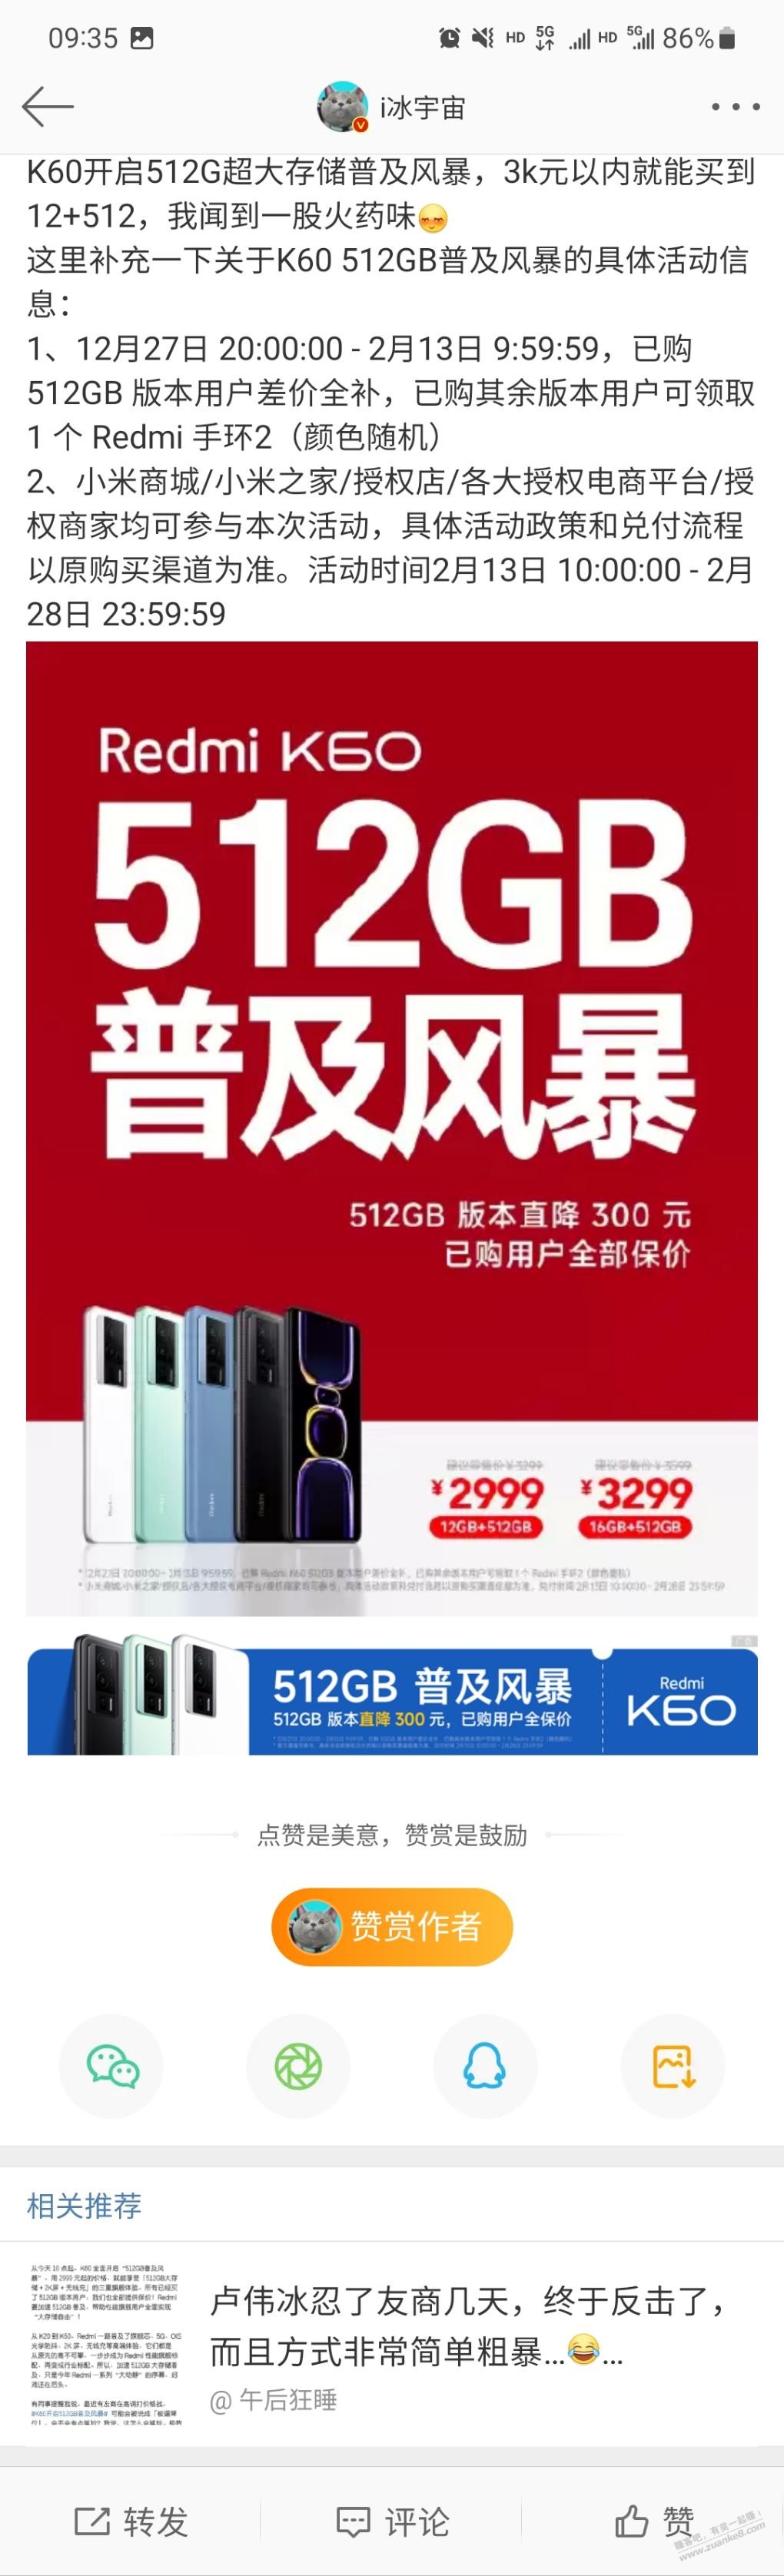 买过k60手机的都可以送红米手环-惠小助(52huixz.com)